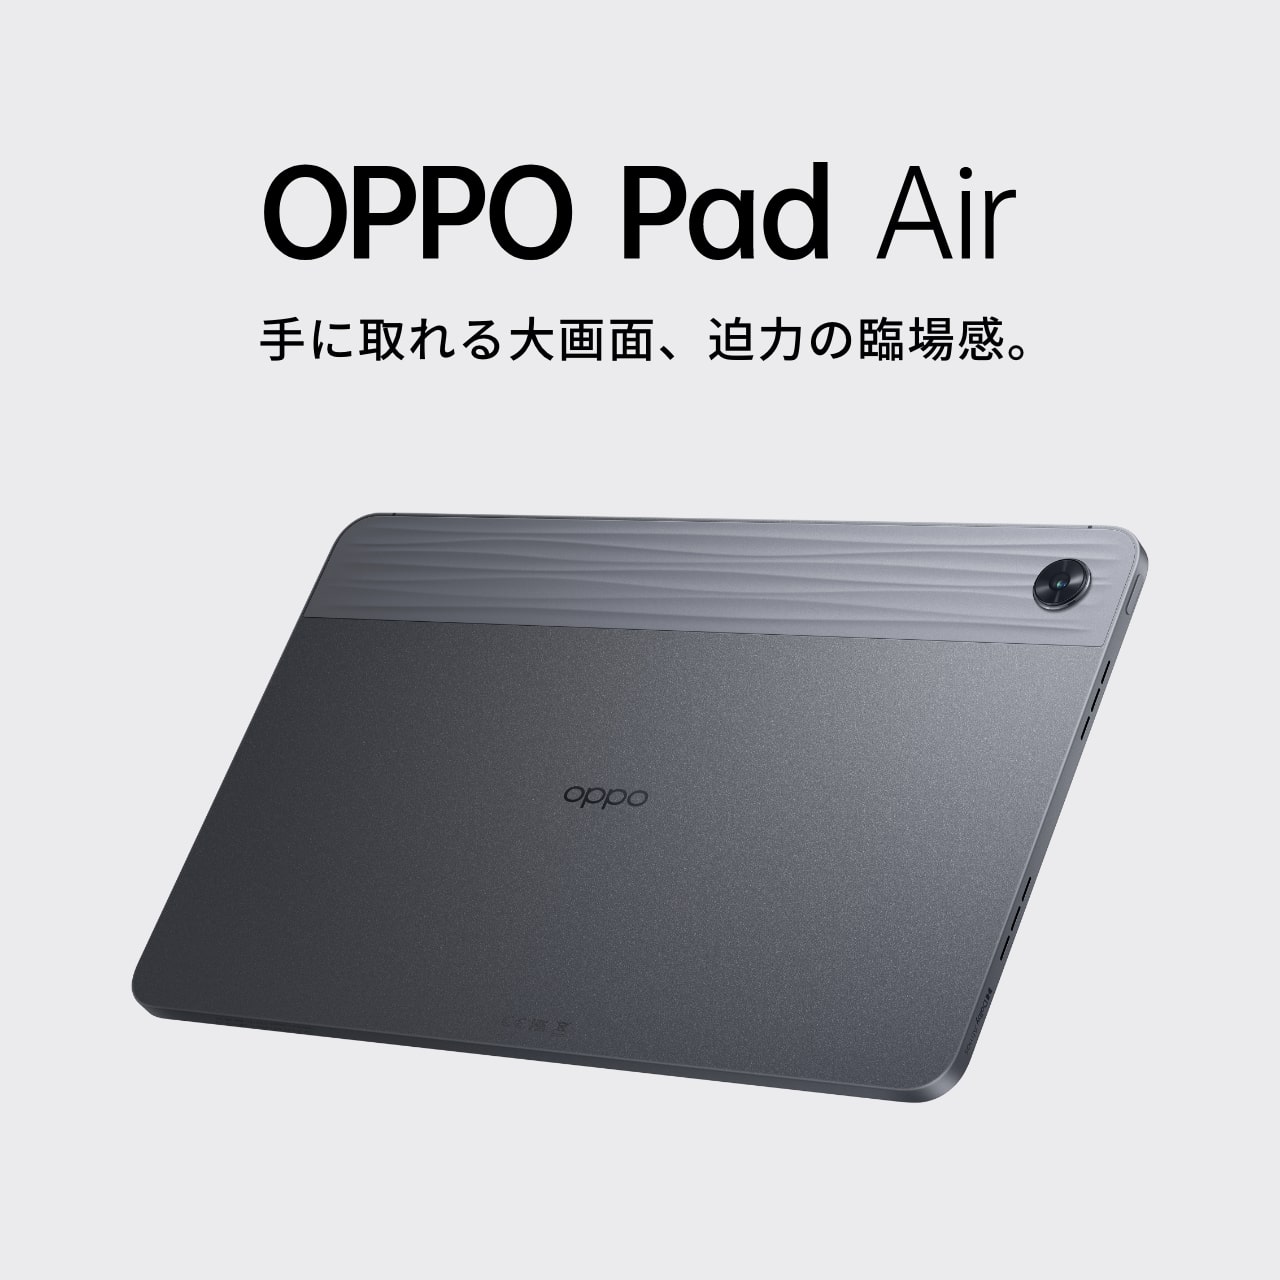 OPPO Pad Air (128GB) | タブレット | OPPO公式オンラインショップ